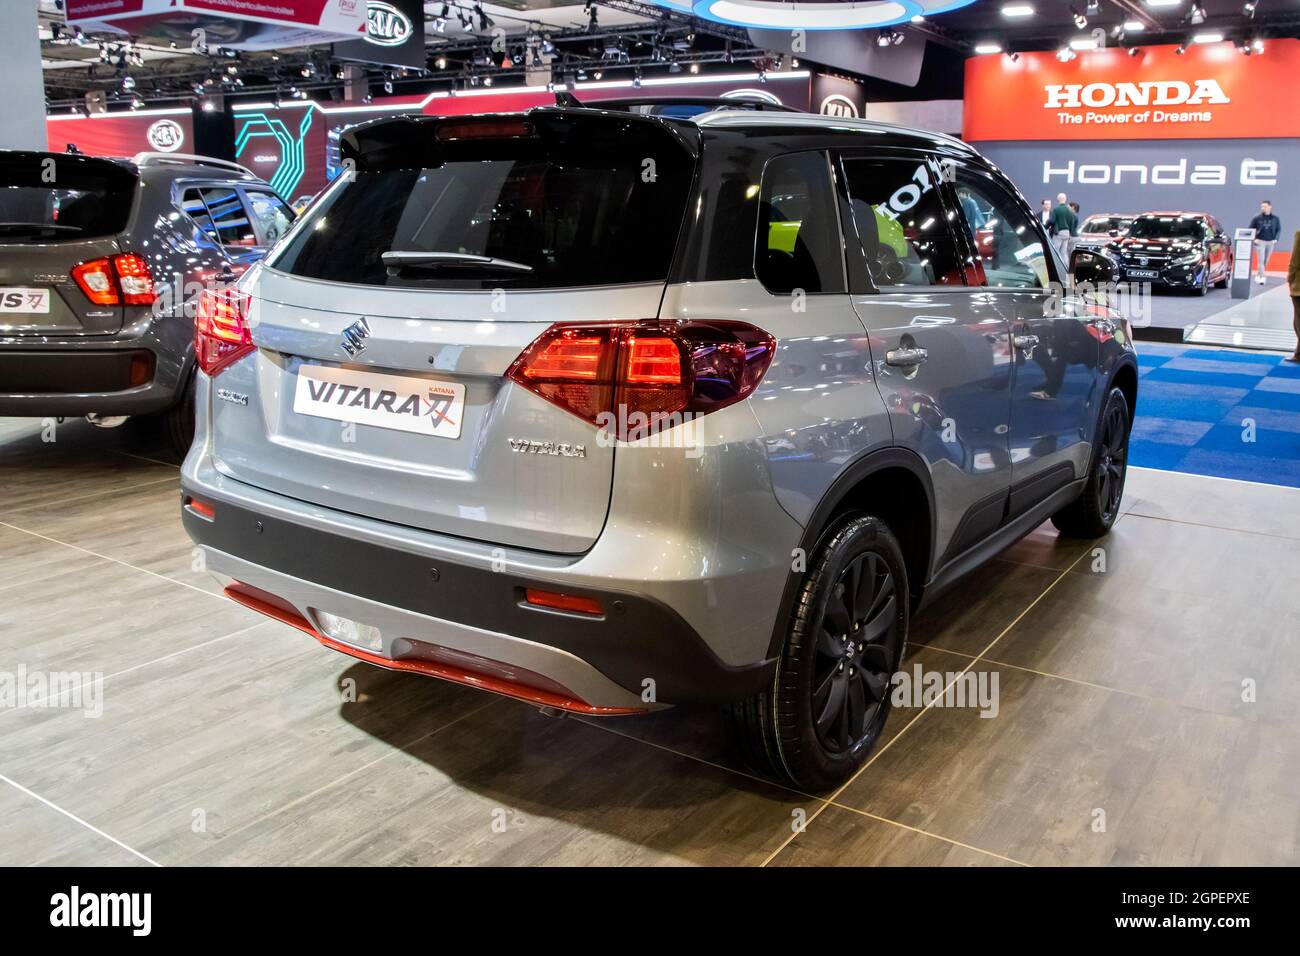 Suzuki Vitara Katana nuovo modello di auto presentato al Motor Show Autosalon 2020. Bruxelles, Belgio - 9 gennaio 2020. Foto Stock